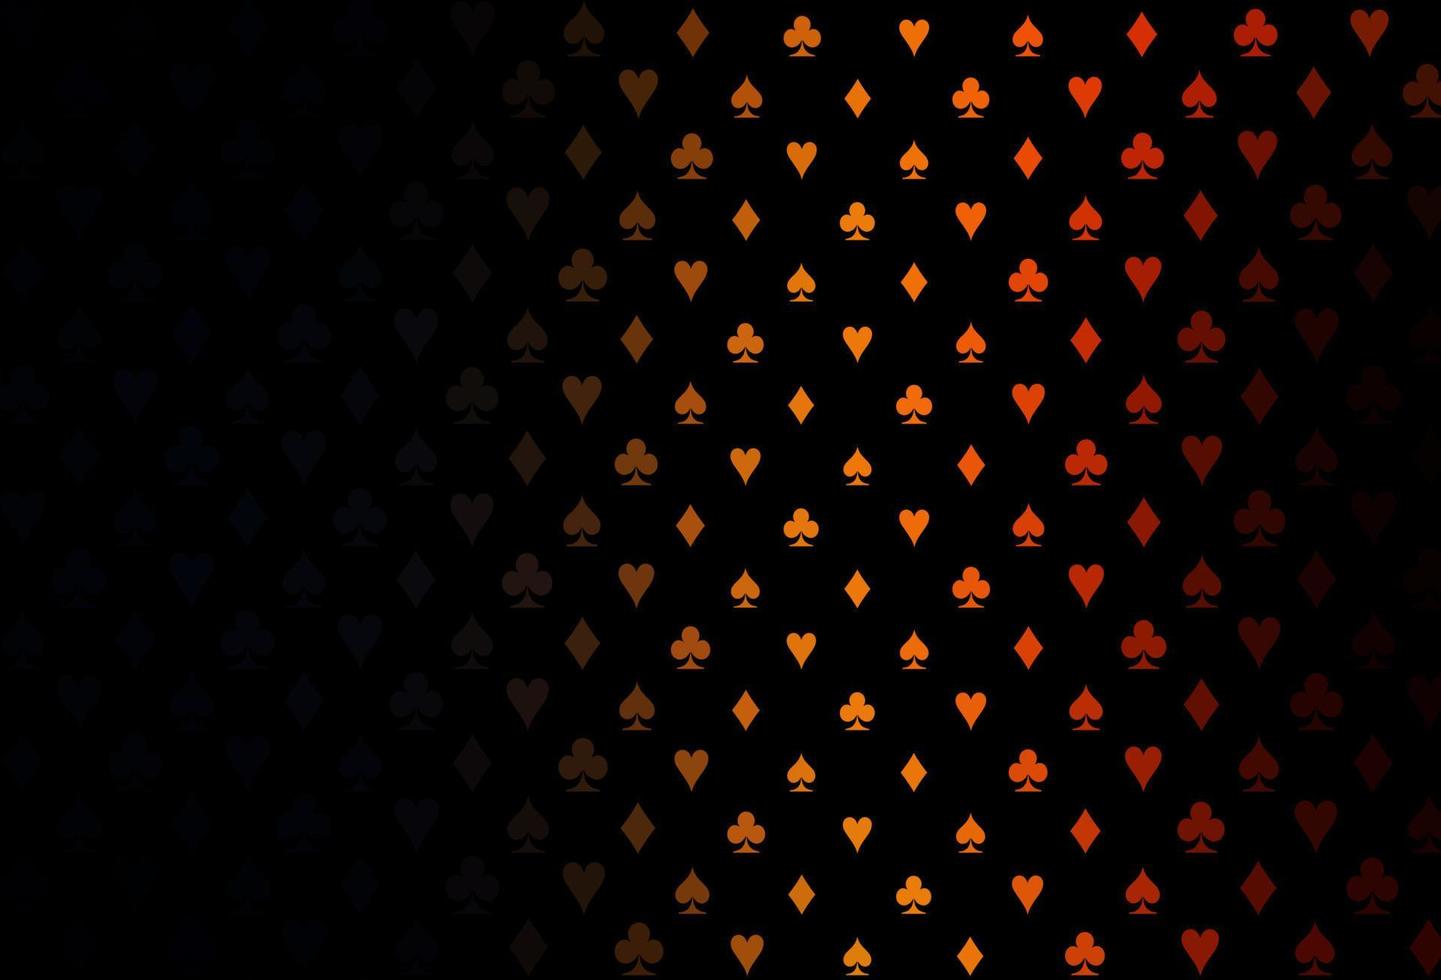 copertina vettoriale arancione scuro con simboli di gioco d'azzardo.